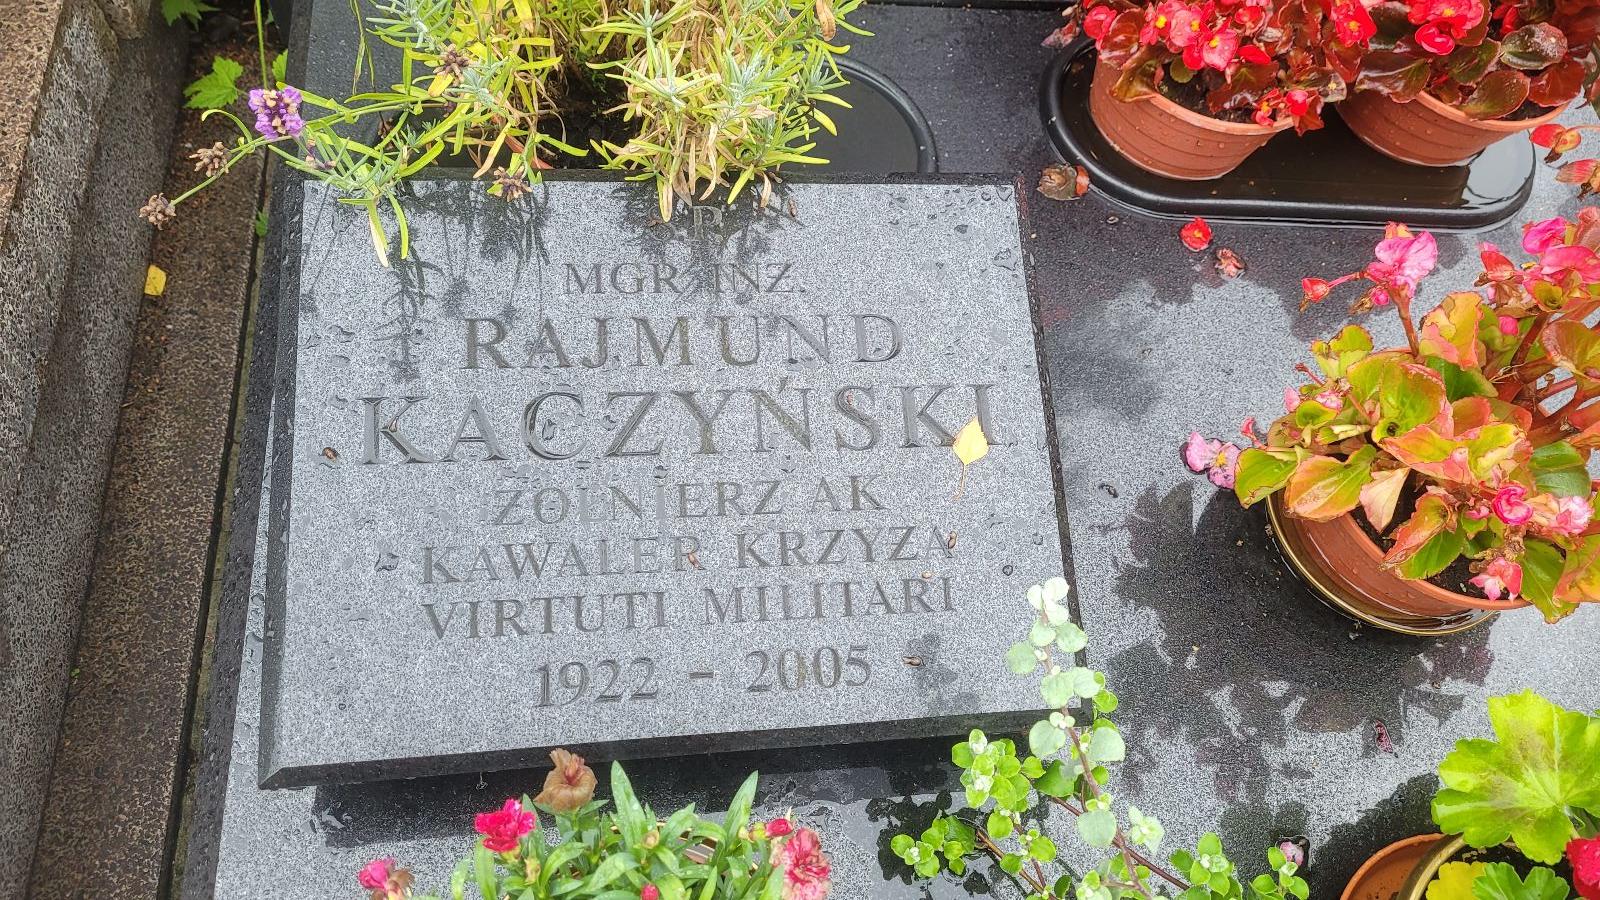 Rajmund Kaczyński